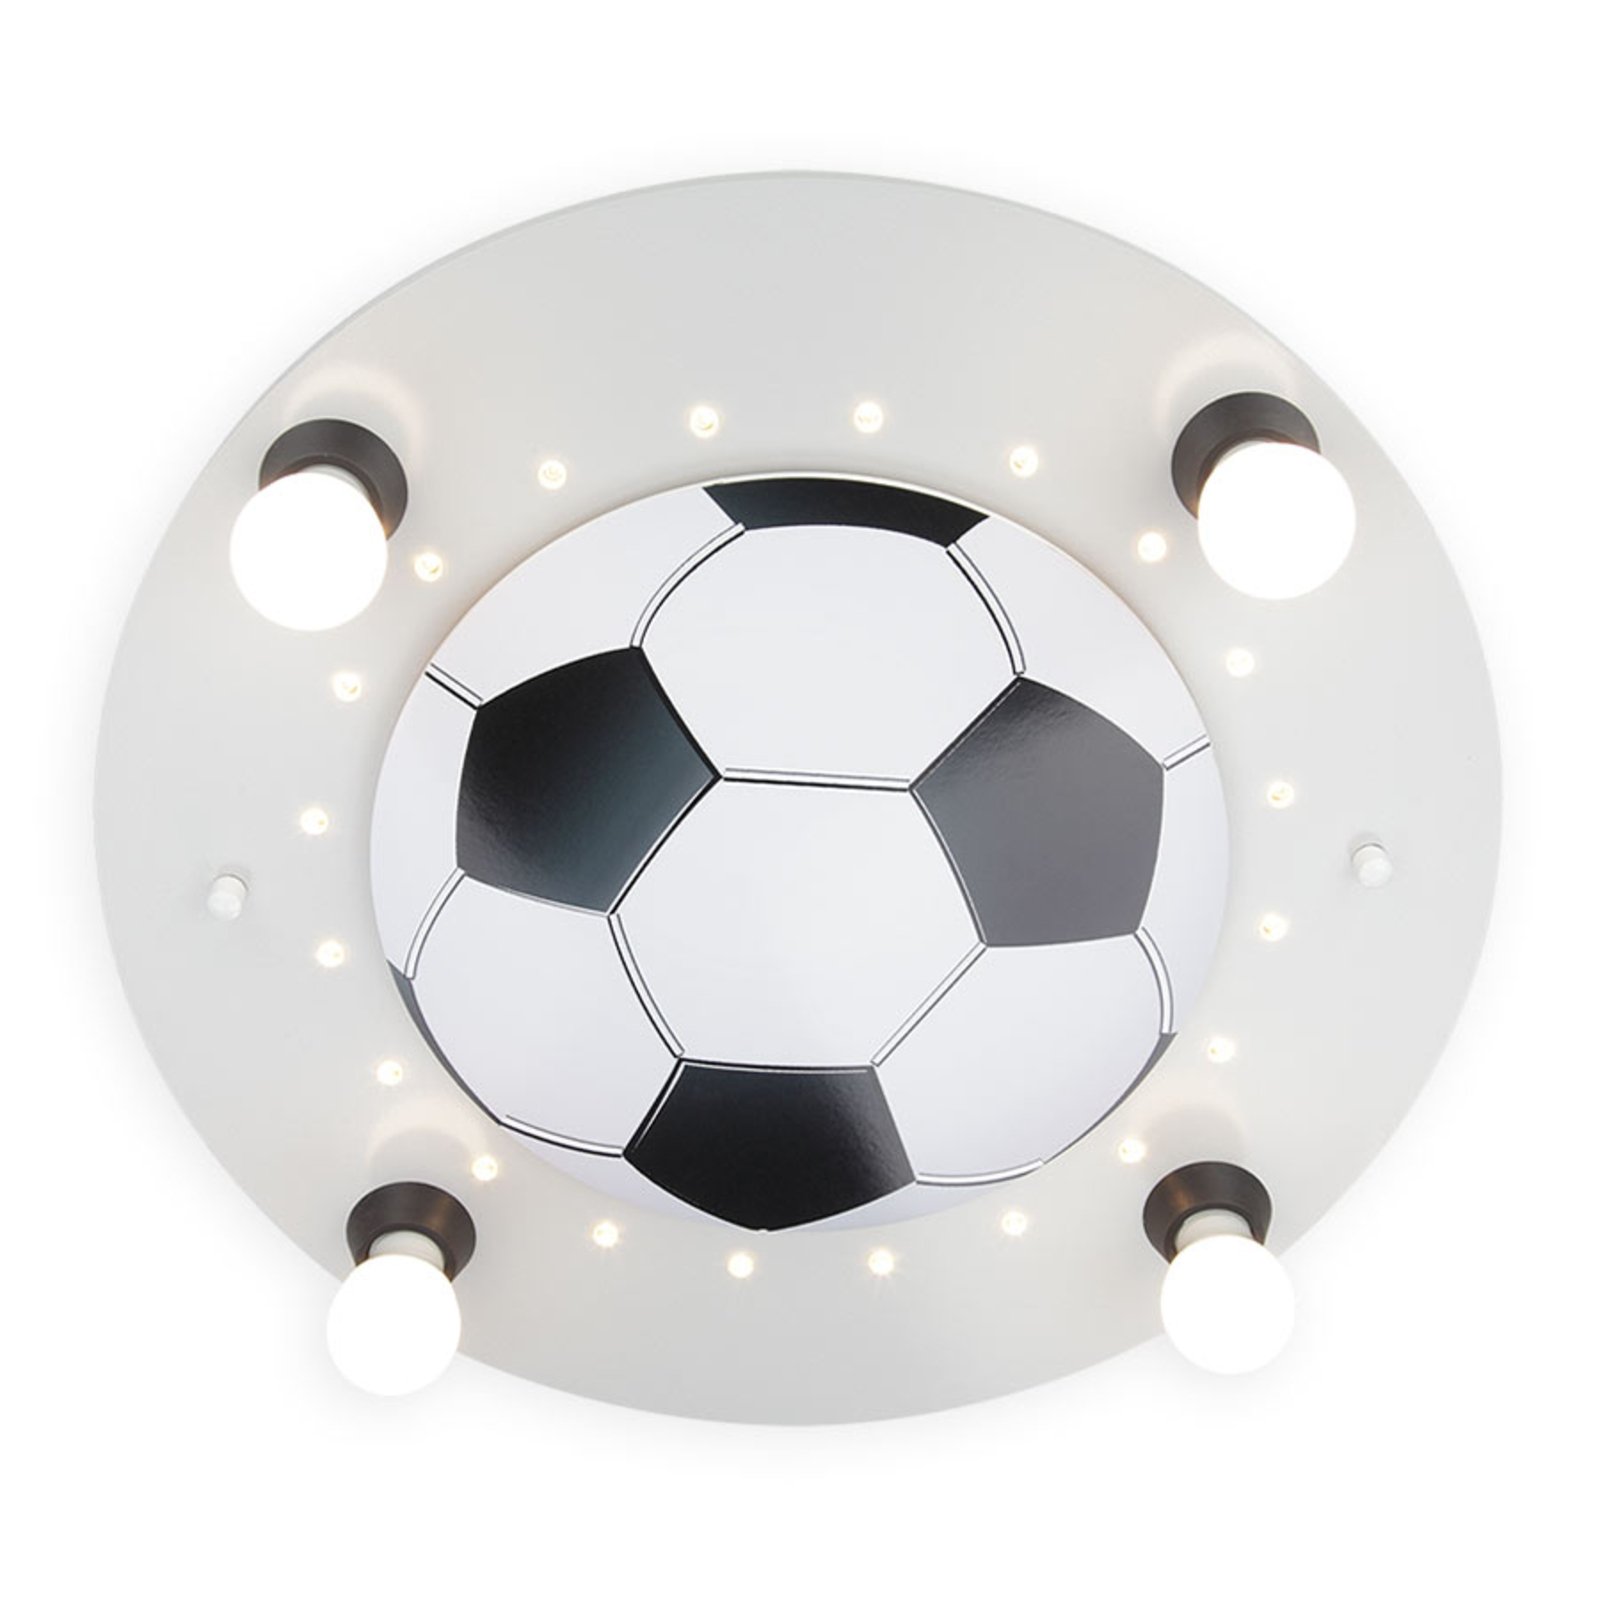 Taklampa Fotboll, 4 lampor, silver-vit